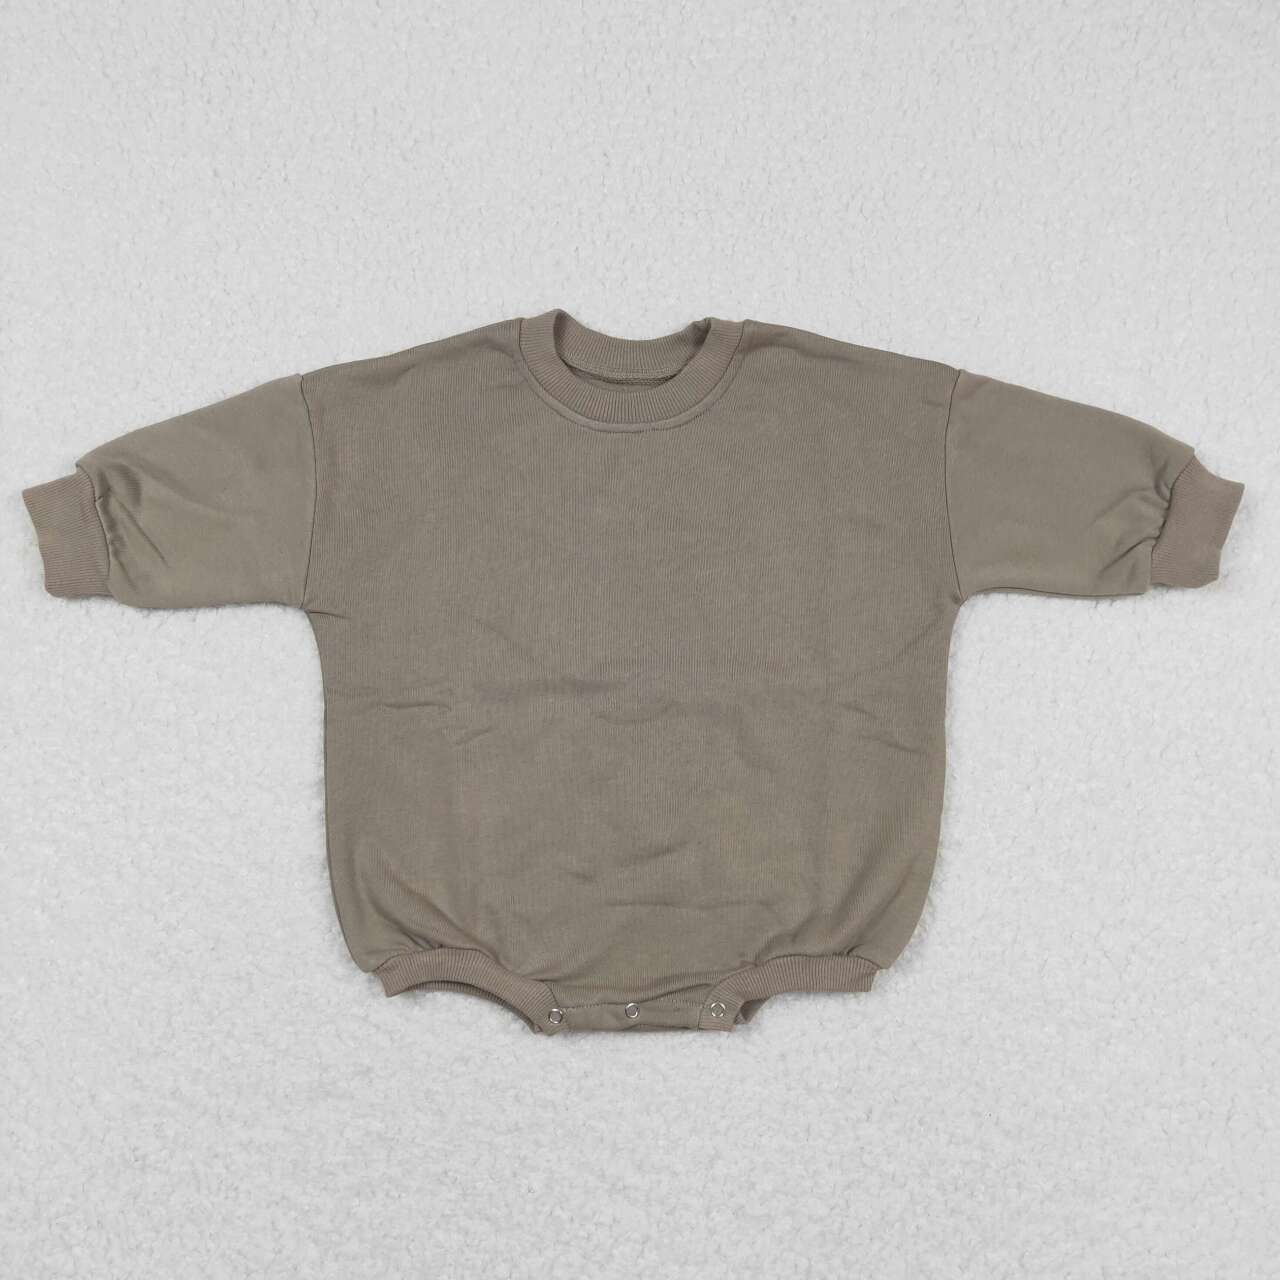 LR0917 Dark Grey Color Cotton Long Sleeve Baby Sweatshirt Romper